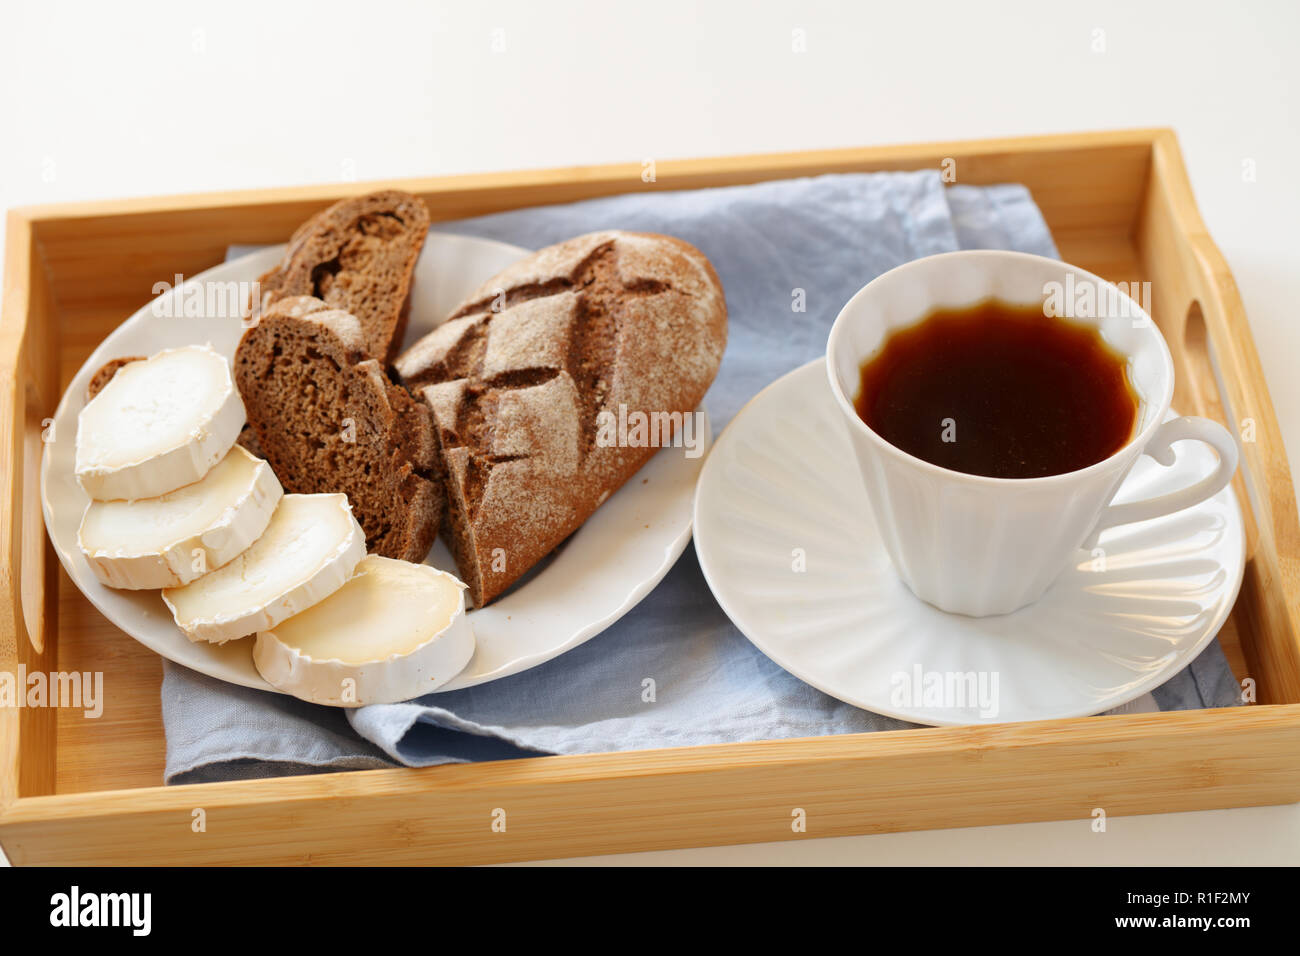 La prima colazione con formaggio di capra, pane di segale e caffè su un vassoio Foto Stock